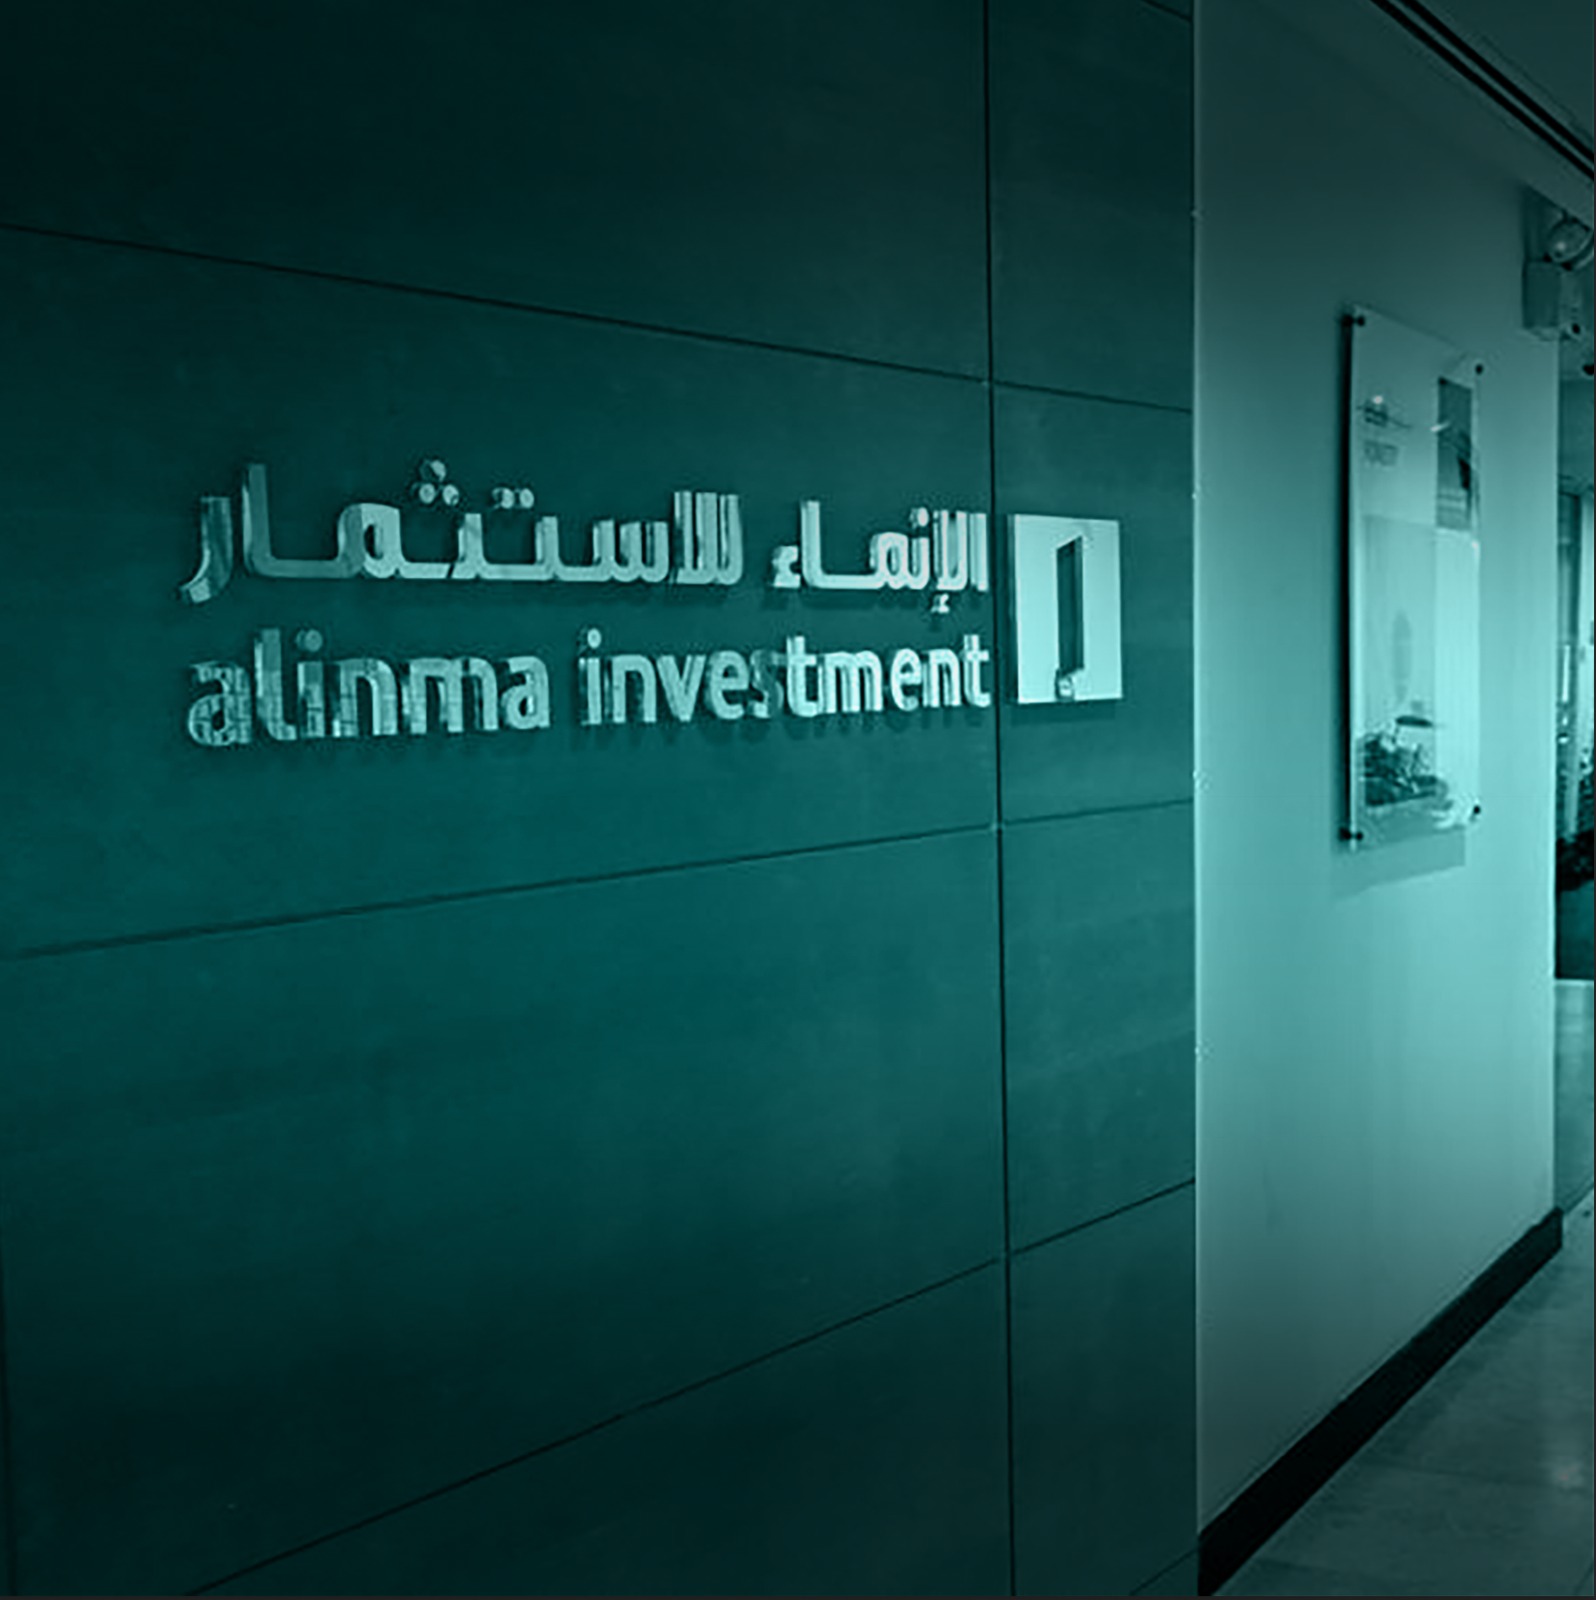 إعلان شركة الإنماء للاستثمار عن تغيير في عضوية مجلس إدارة صندوق الإنماء المتداول لصكوك الحكومة السعودية المحلية – قصيرة الأجل.